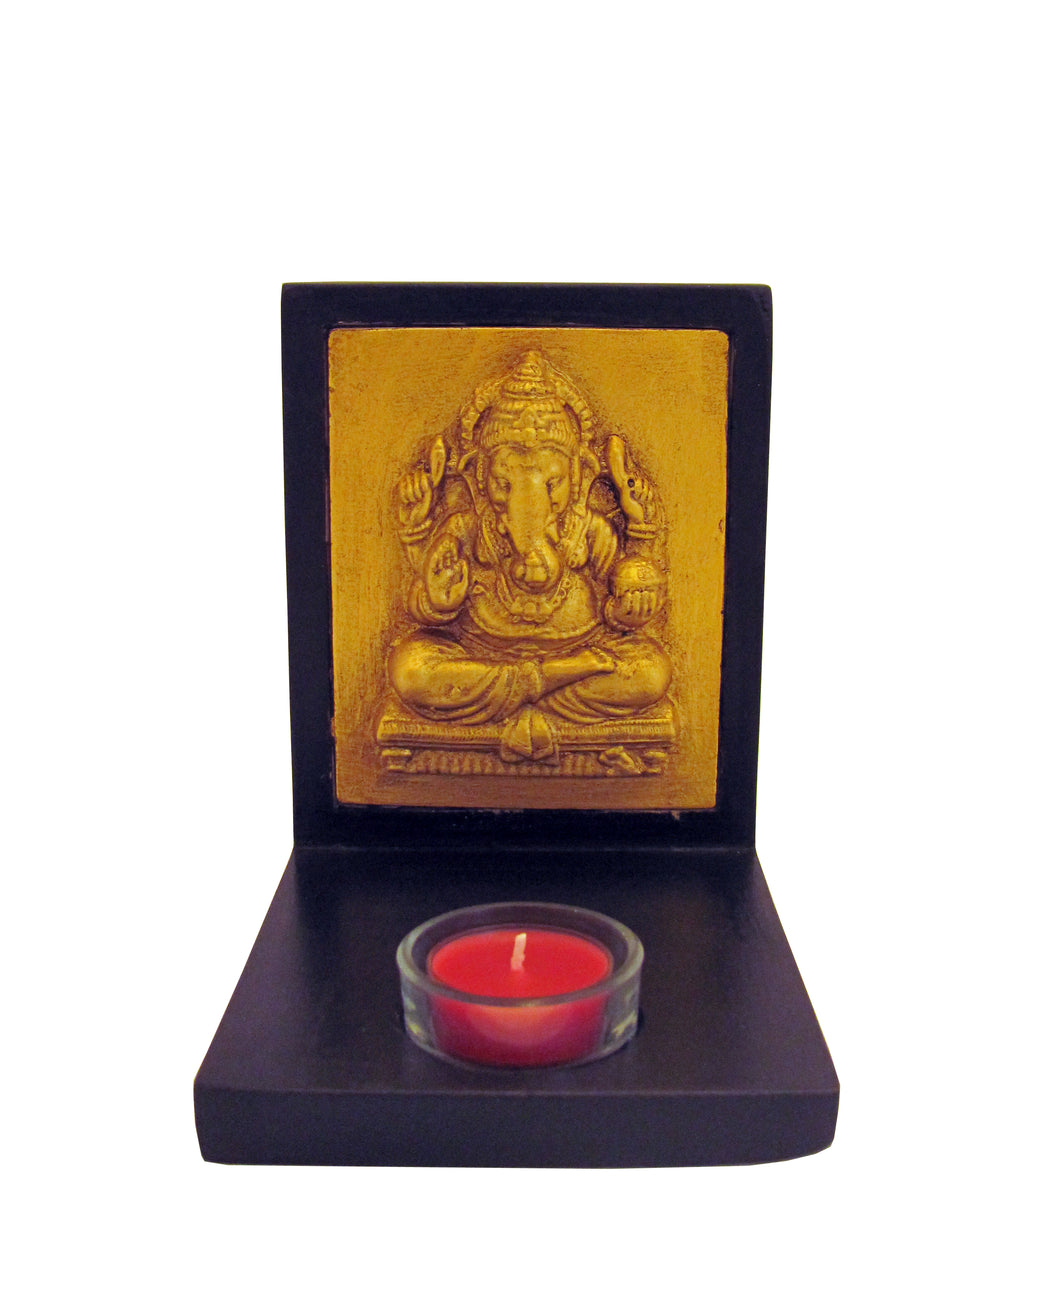 Ganesha Candle Holder